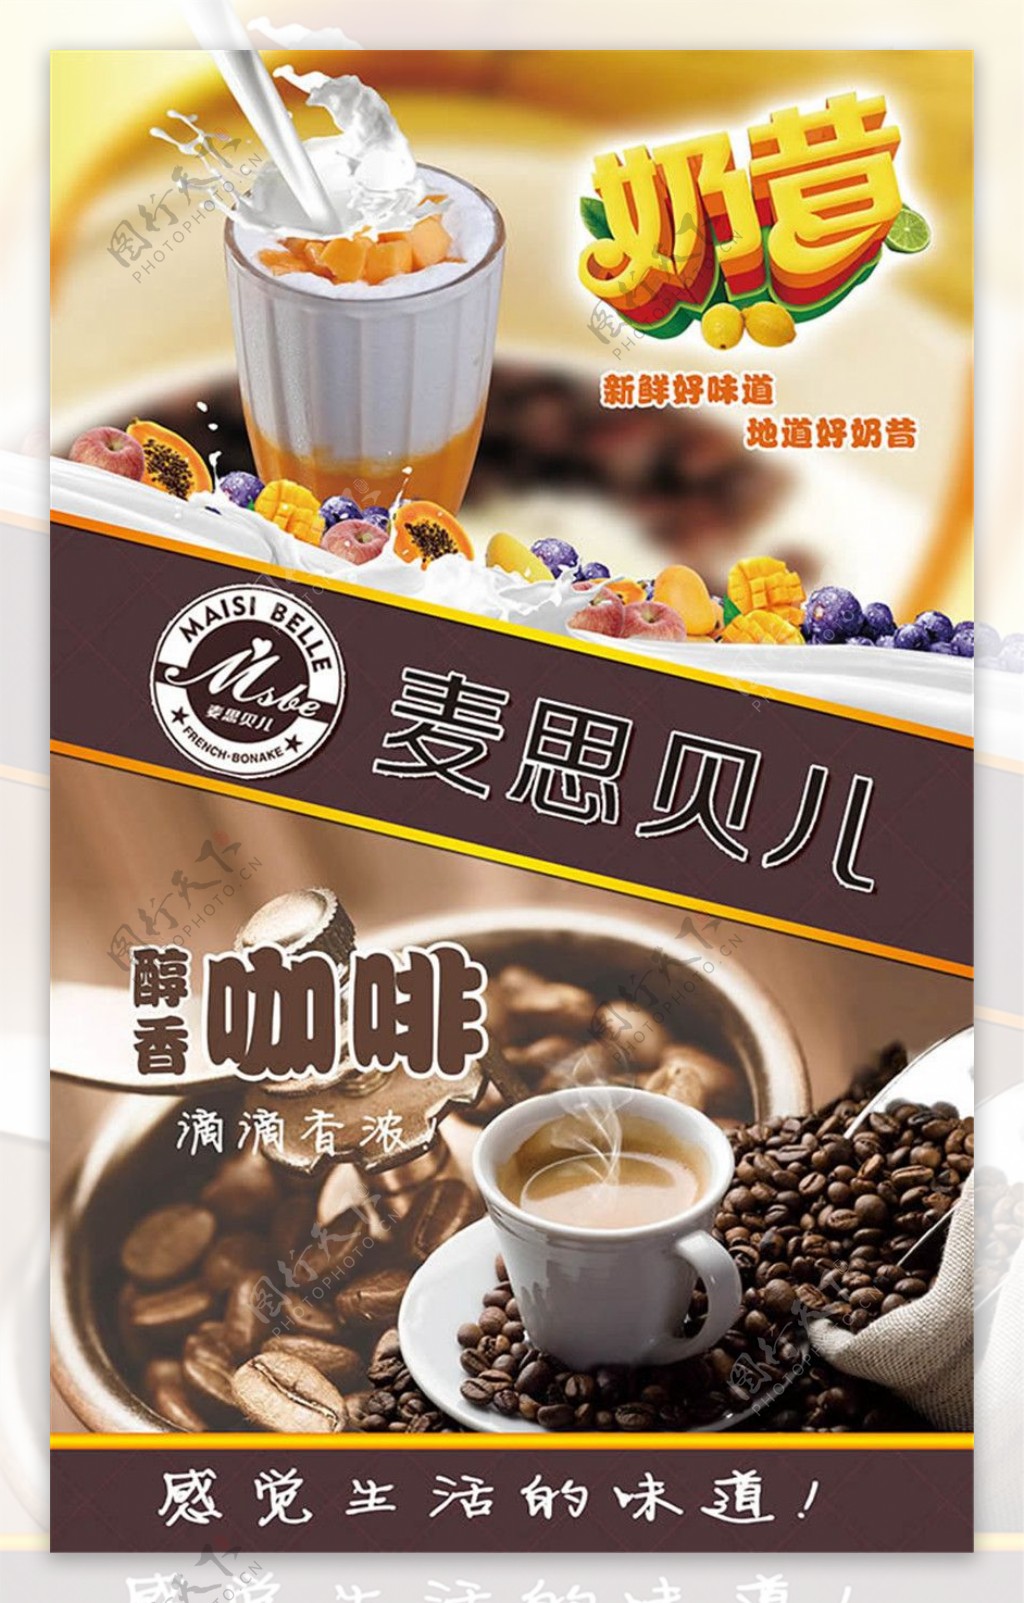 奶昔咖啡宣传海报设计psd素材